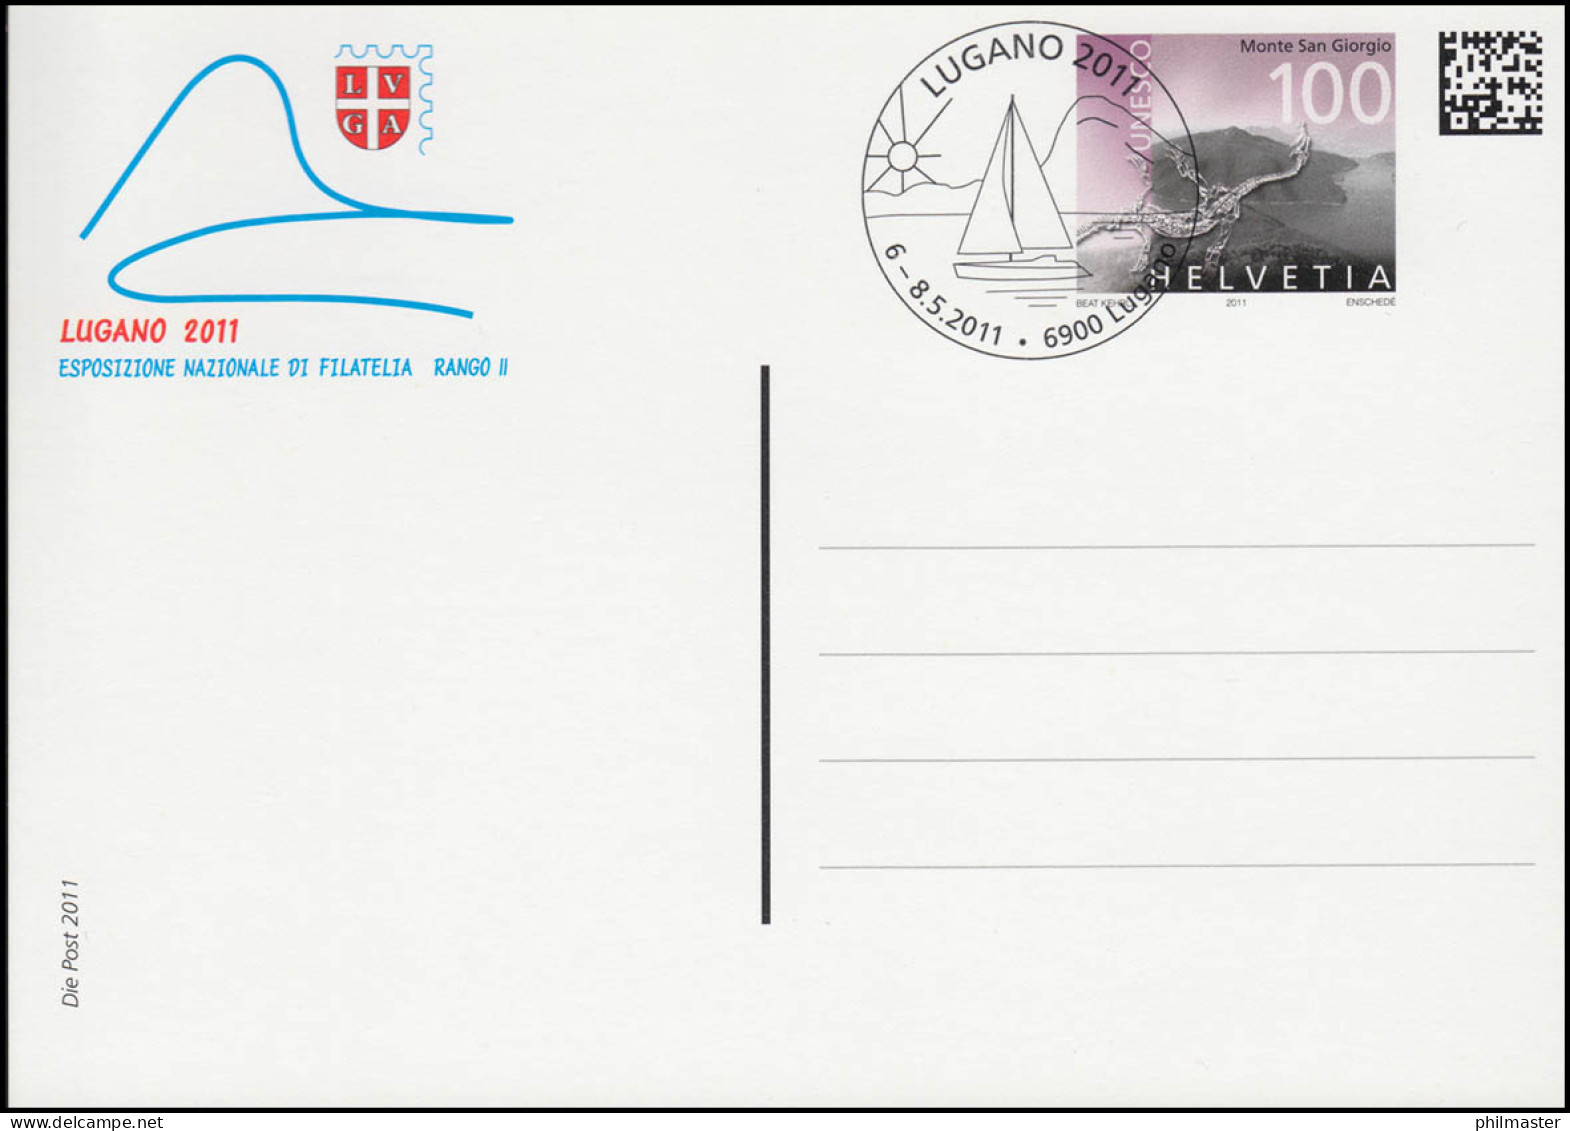 Schweiz Postkarte P 342 Briefmarkenausstellung LUGANO 2011, ESSt LUGANO - Ganzsachen